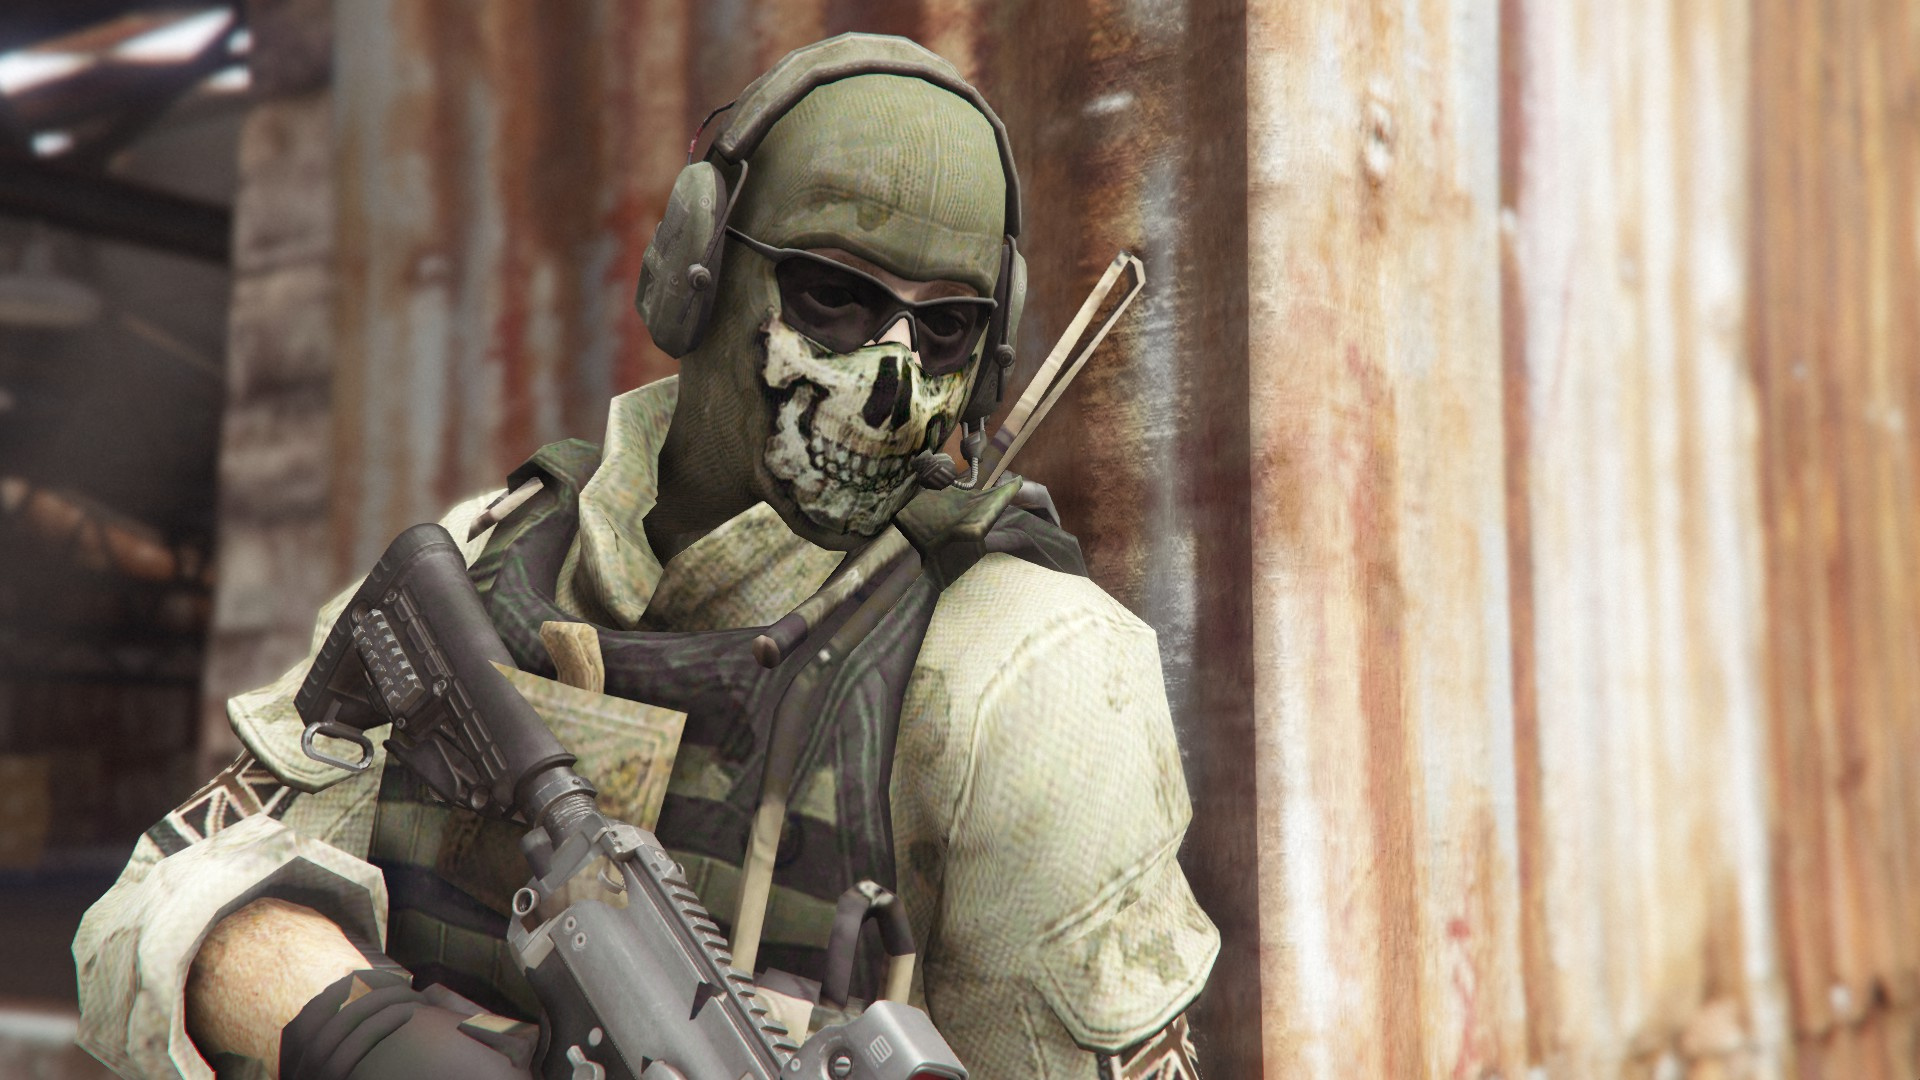 Steam Workshop::Simon Ghost Riley Call Of Duty Modern Warfare